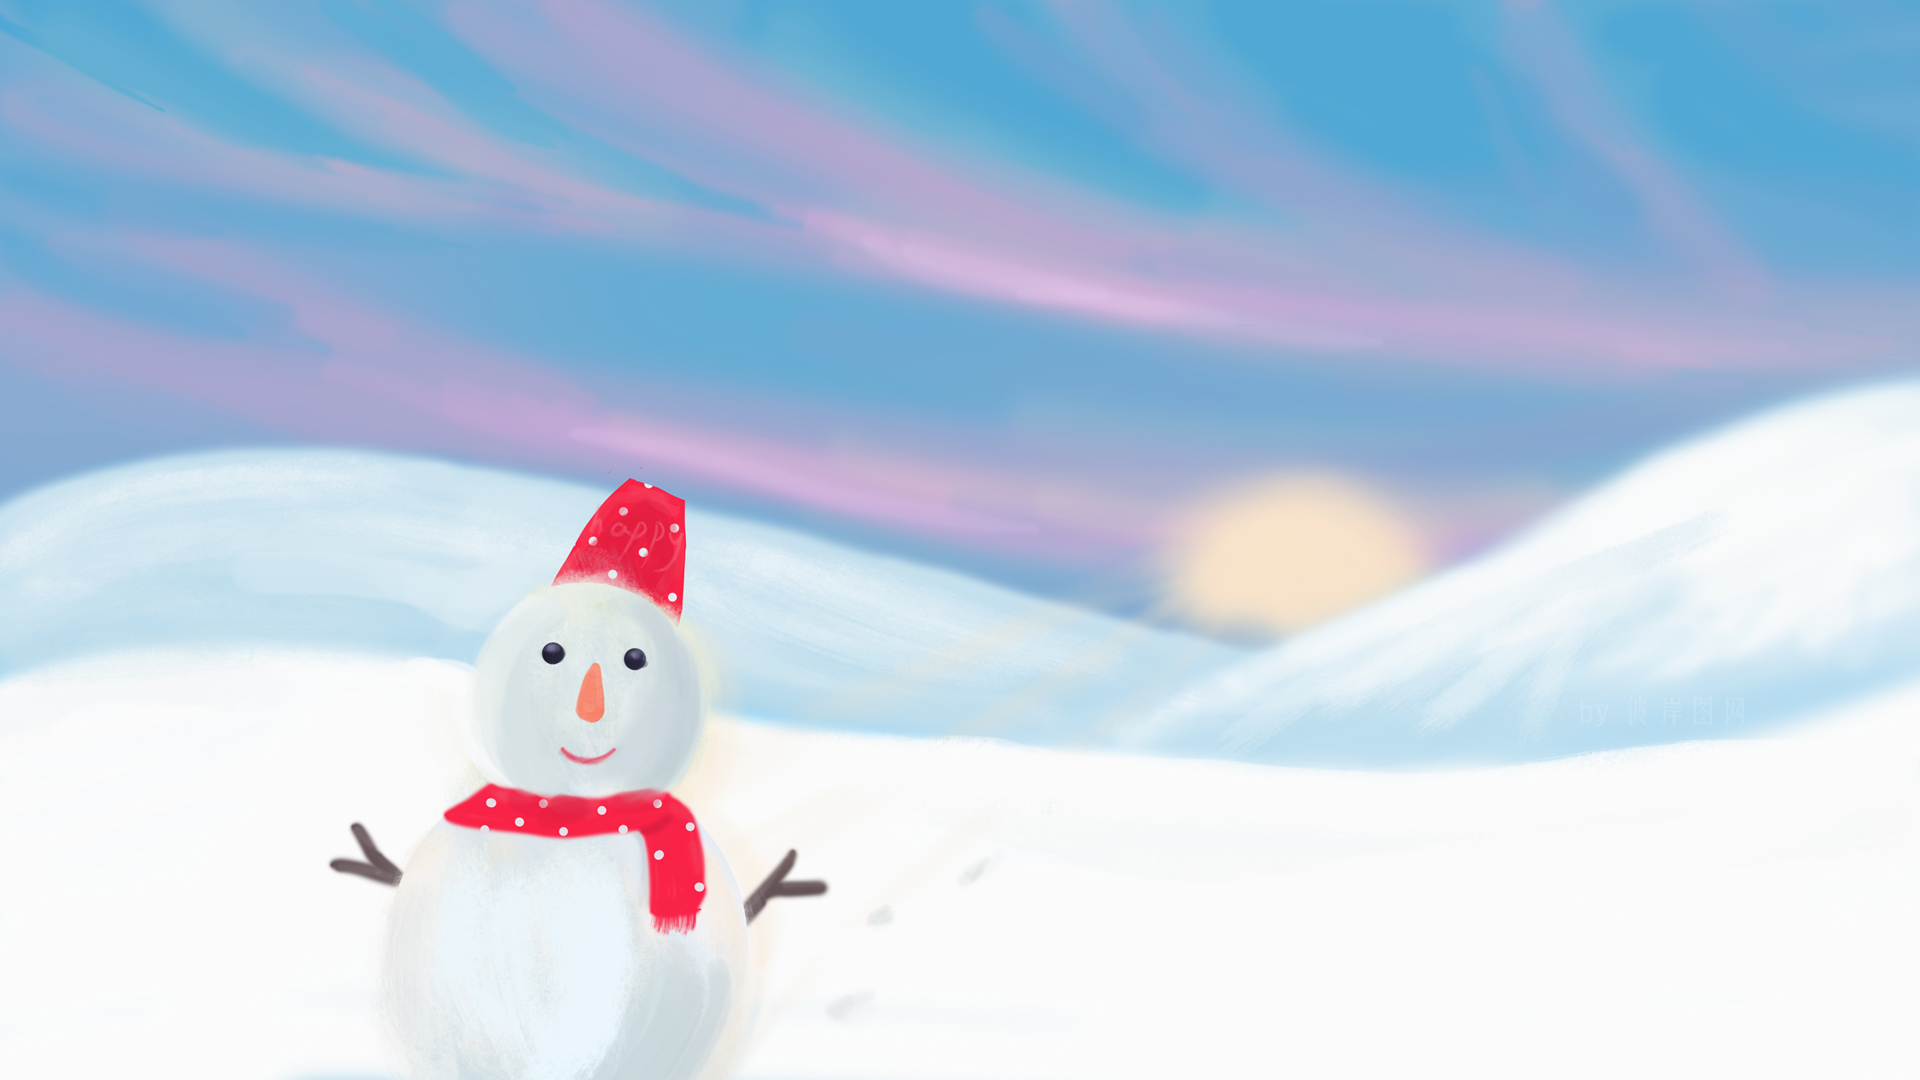 彼岸原创 冬天 天空 太阳 雪地 雪人 圣诞节 手绘风景 精选 高清壁纸